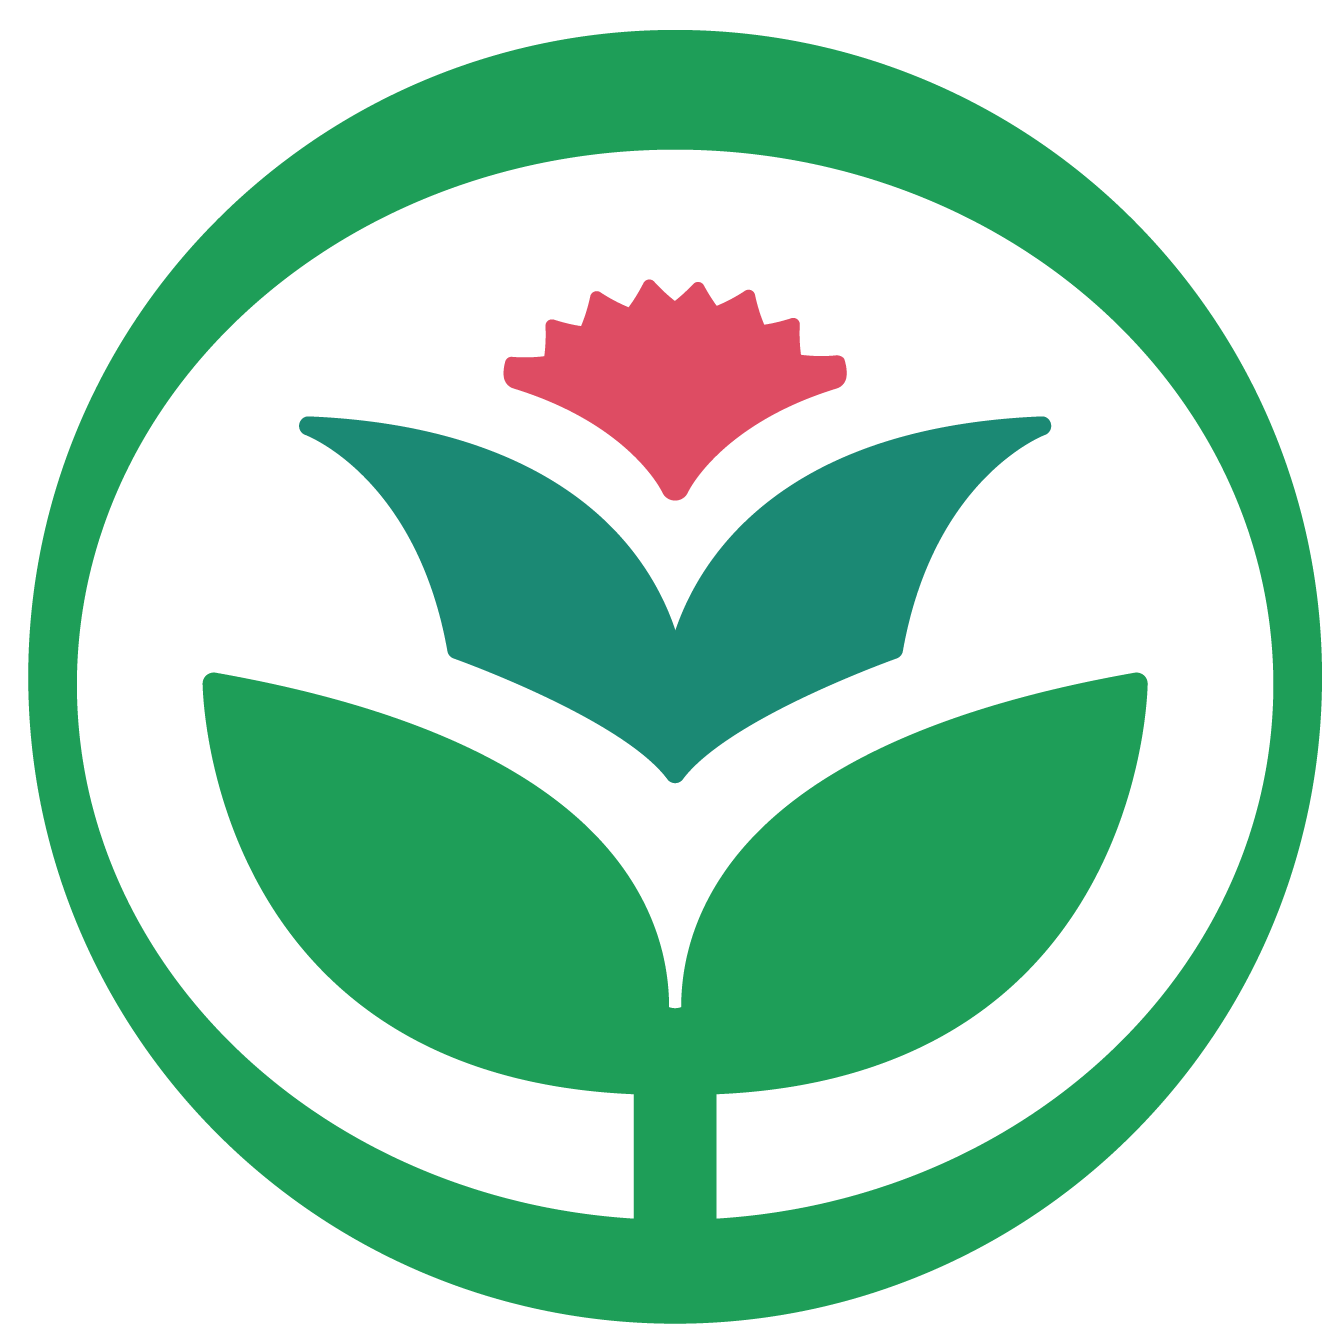 Company logo of Plant California